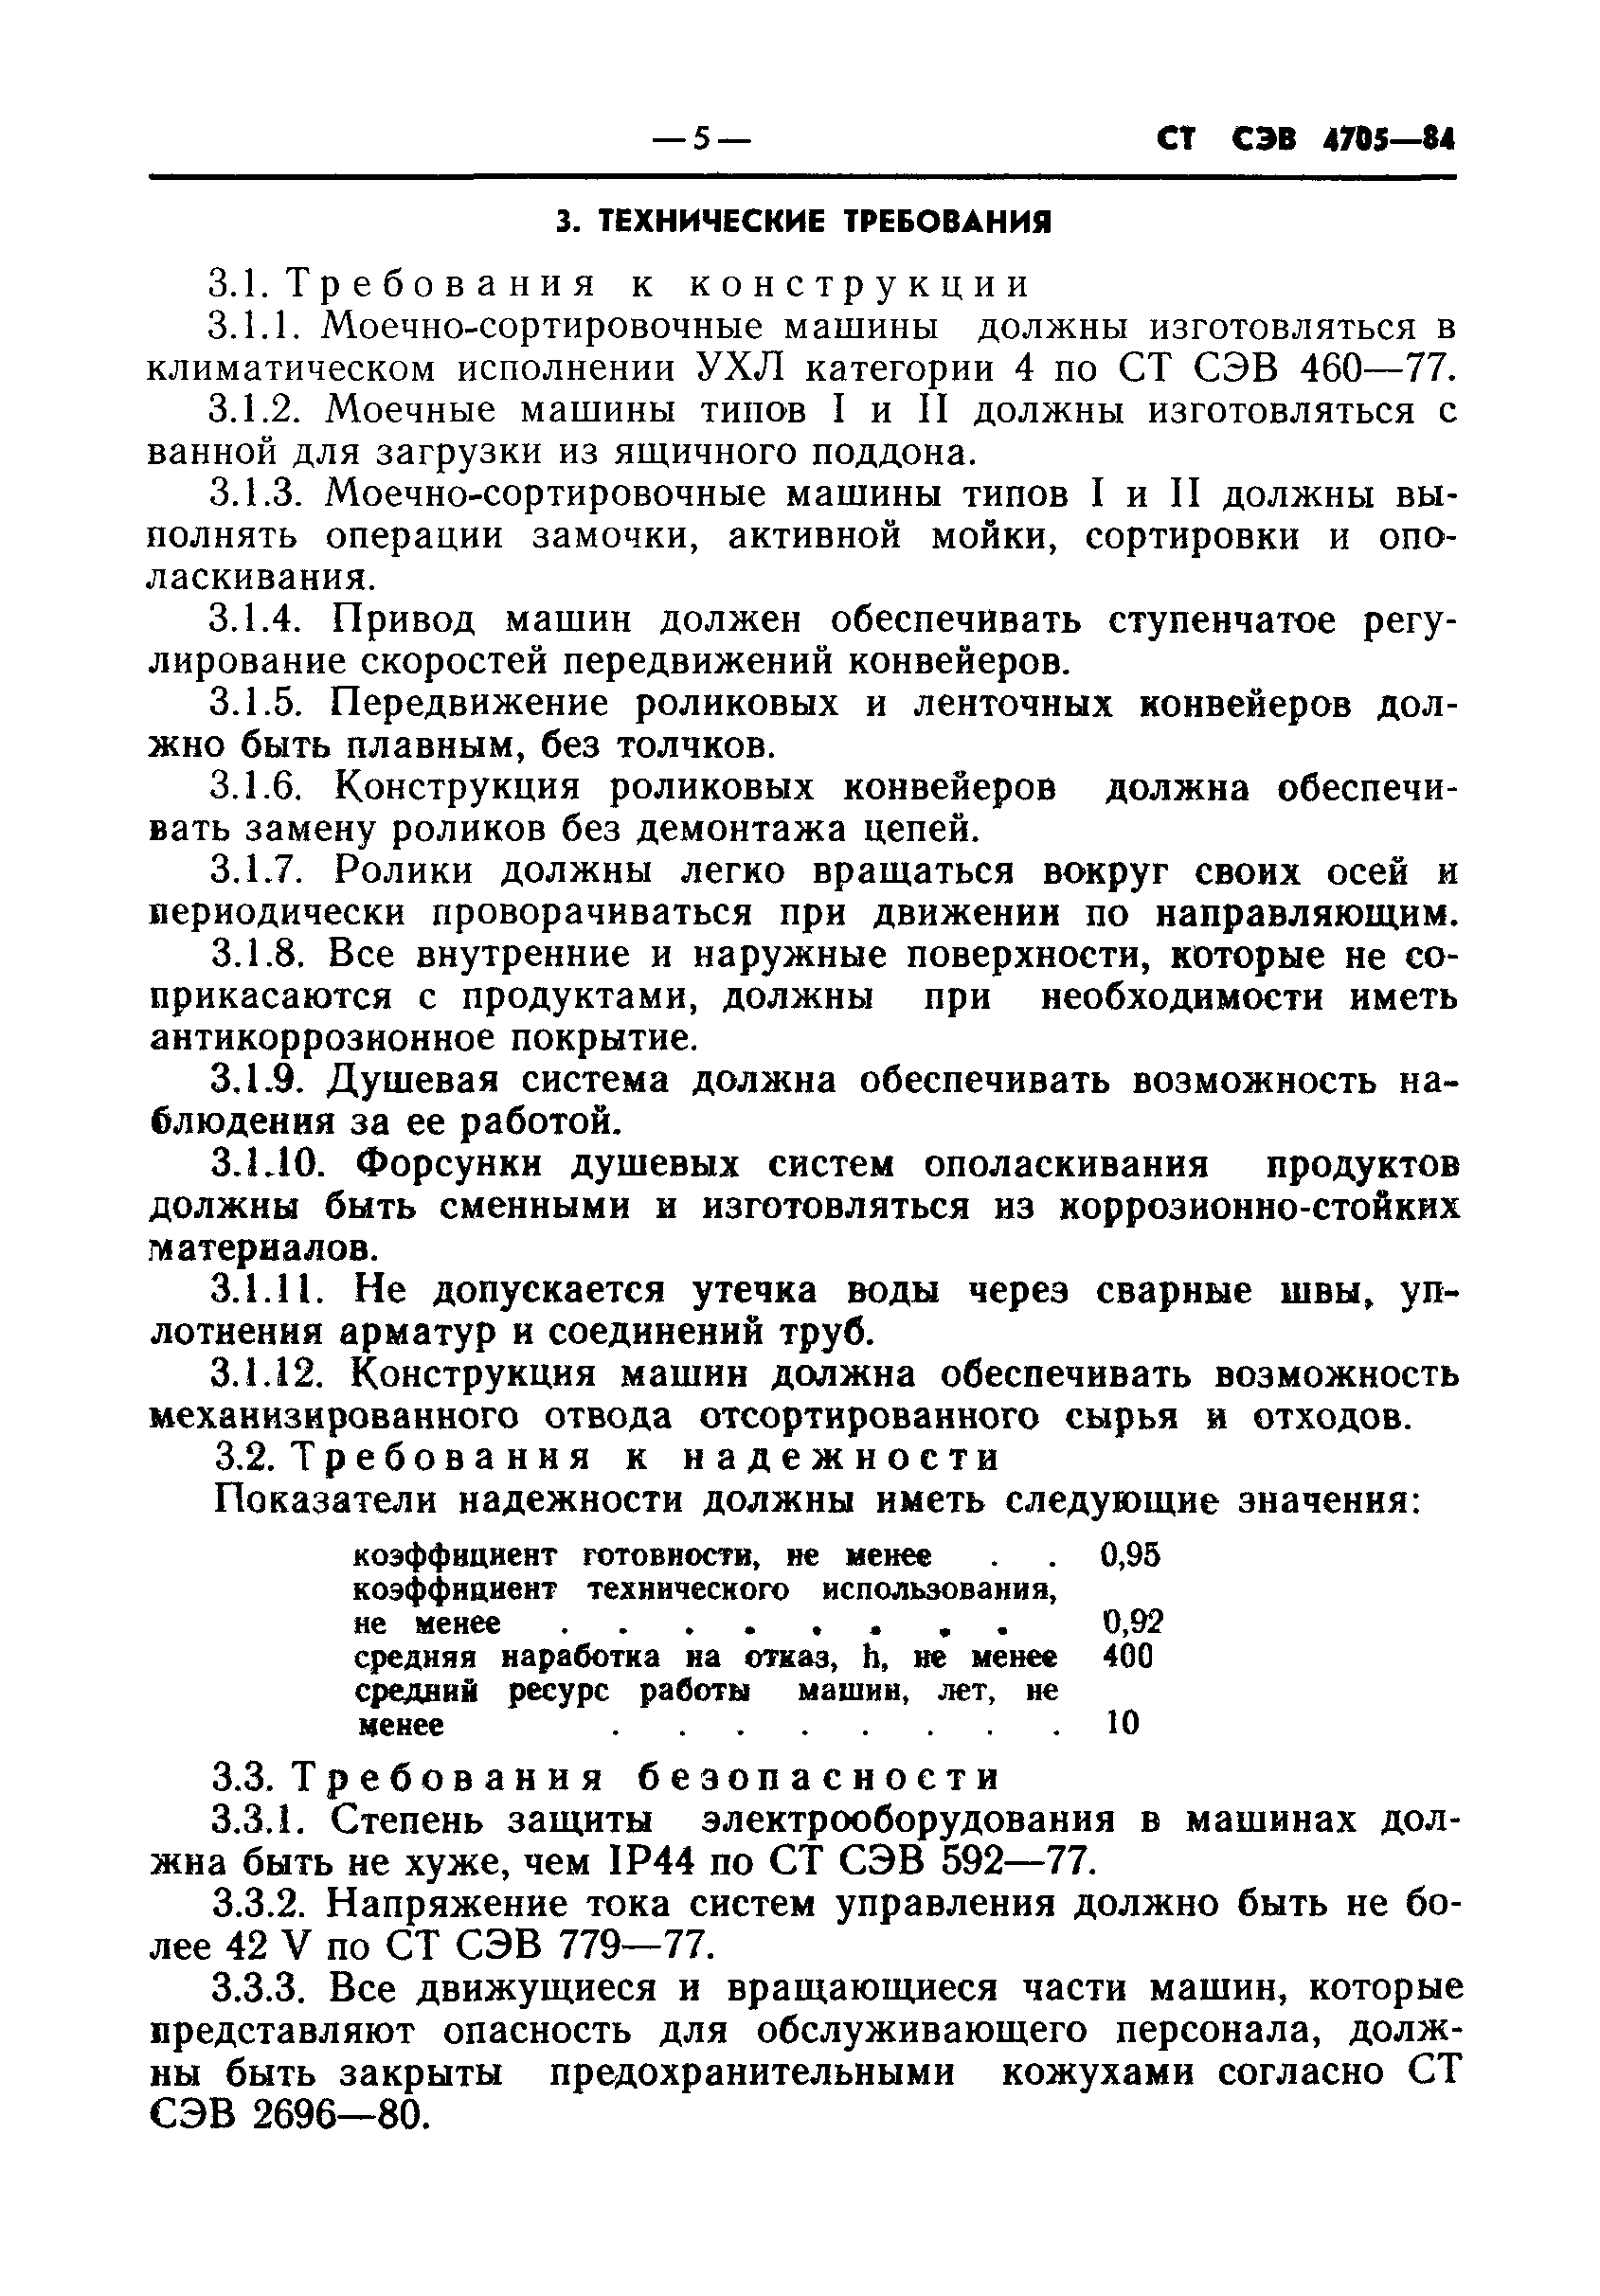 СТ СЭВ 4705-84